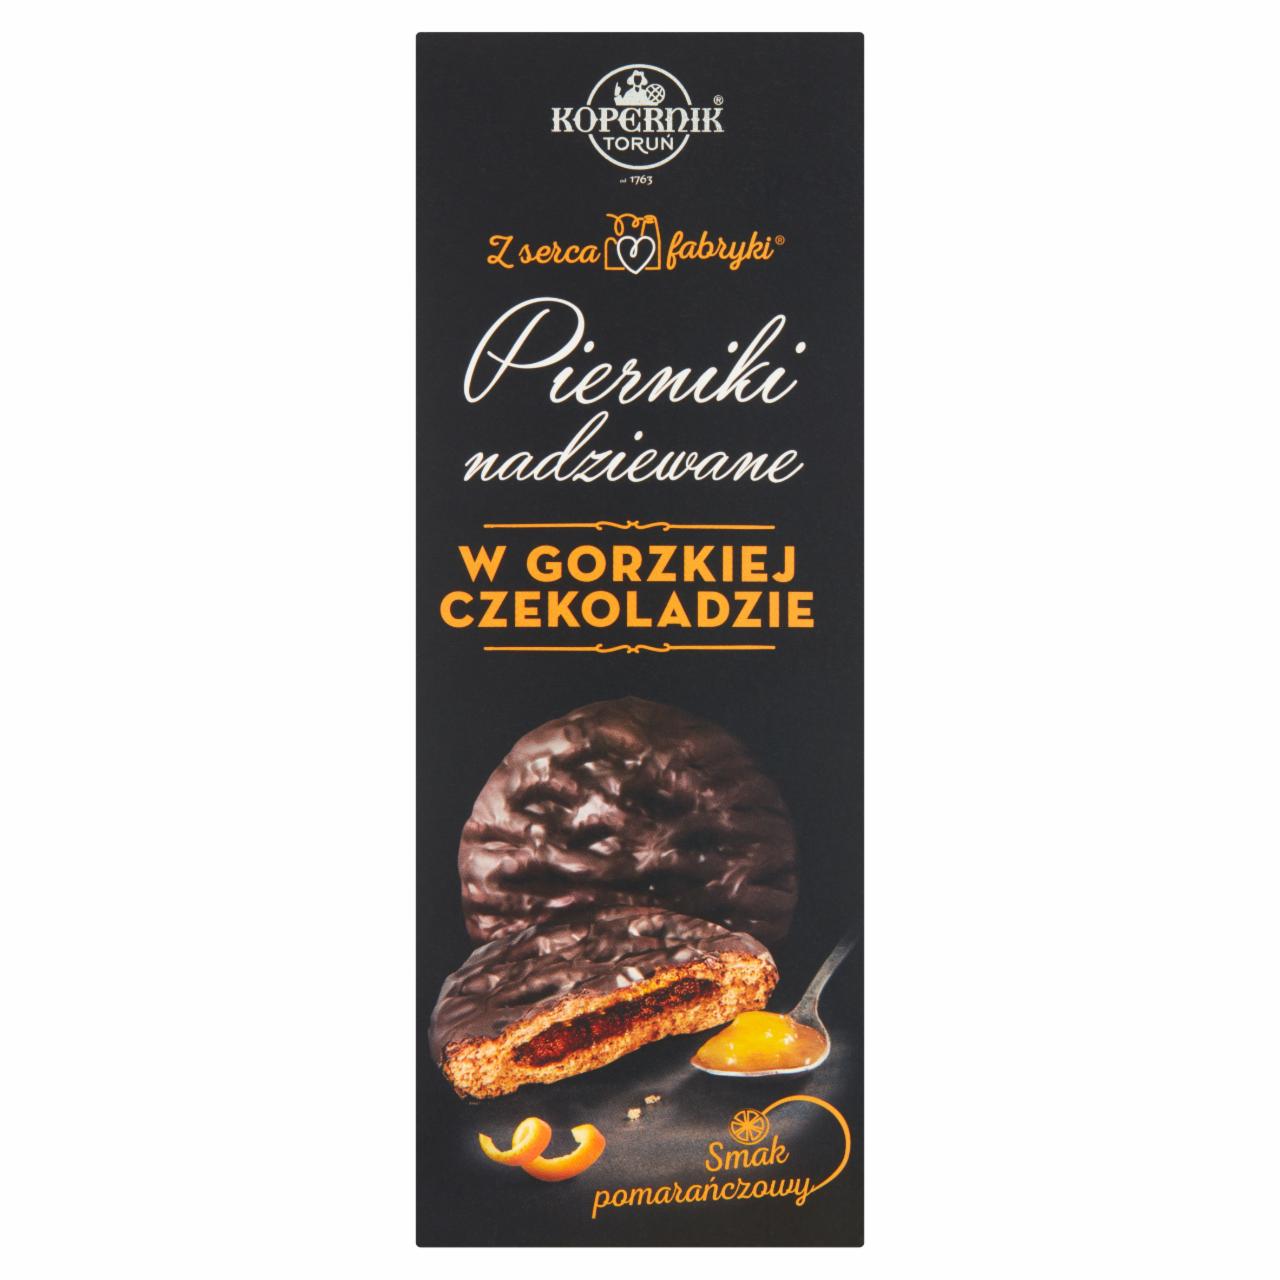 Zdjęcia - KOPERNIK Z serca fabryki Pierniki nadziewane w gorzkiej czekoladzie smak pomarańczowy 150 g